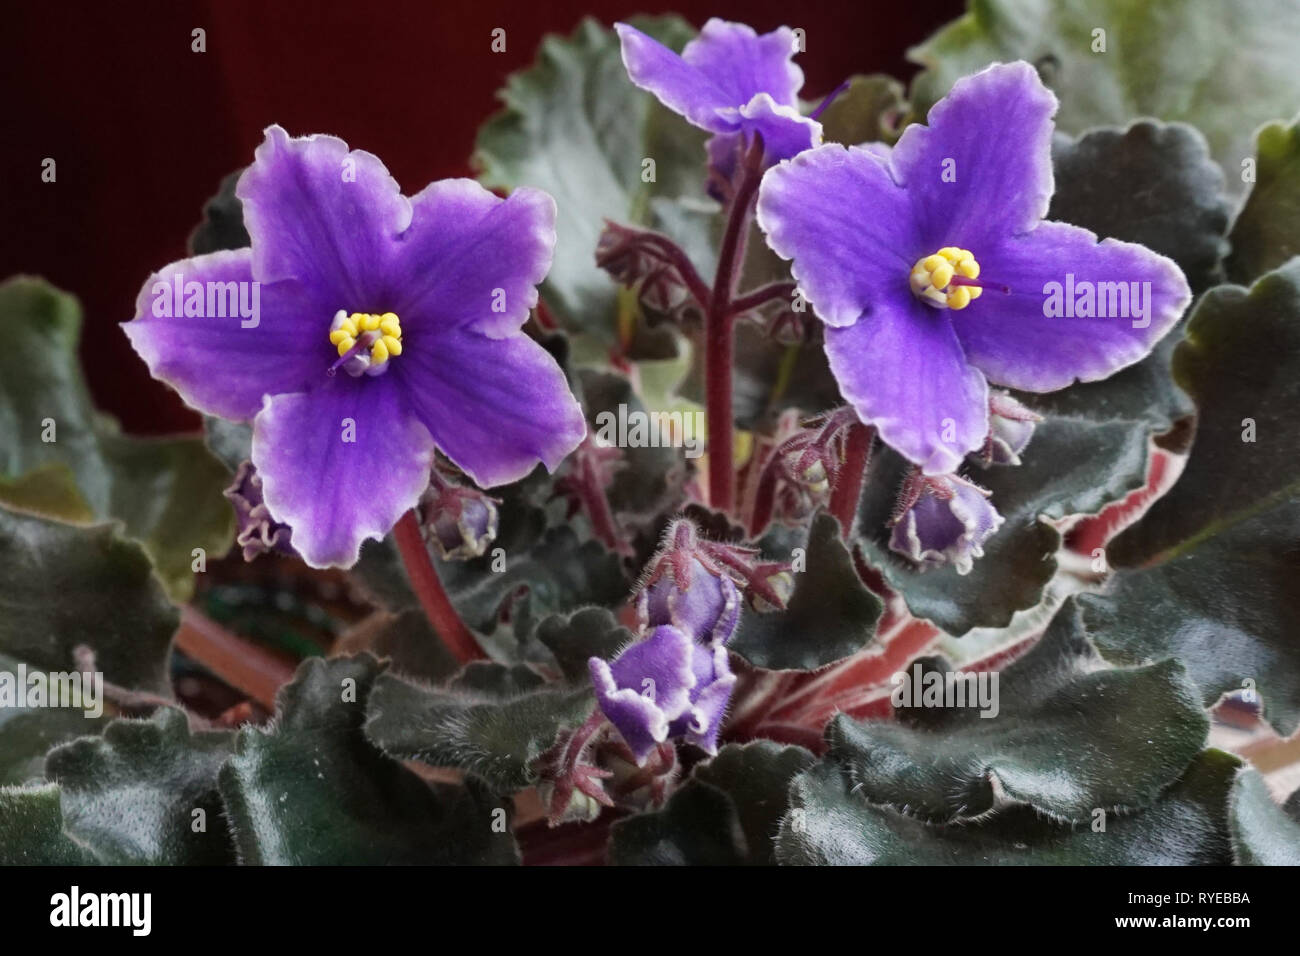 Close-up of les fleurs violettes d'une violette africaine (Saintpaulia) Banque D'Images